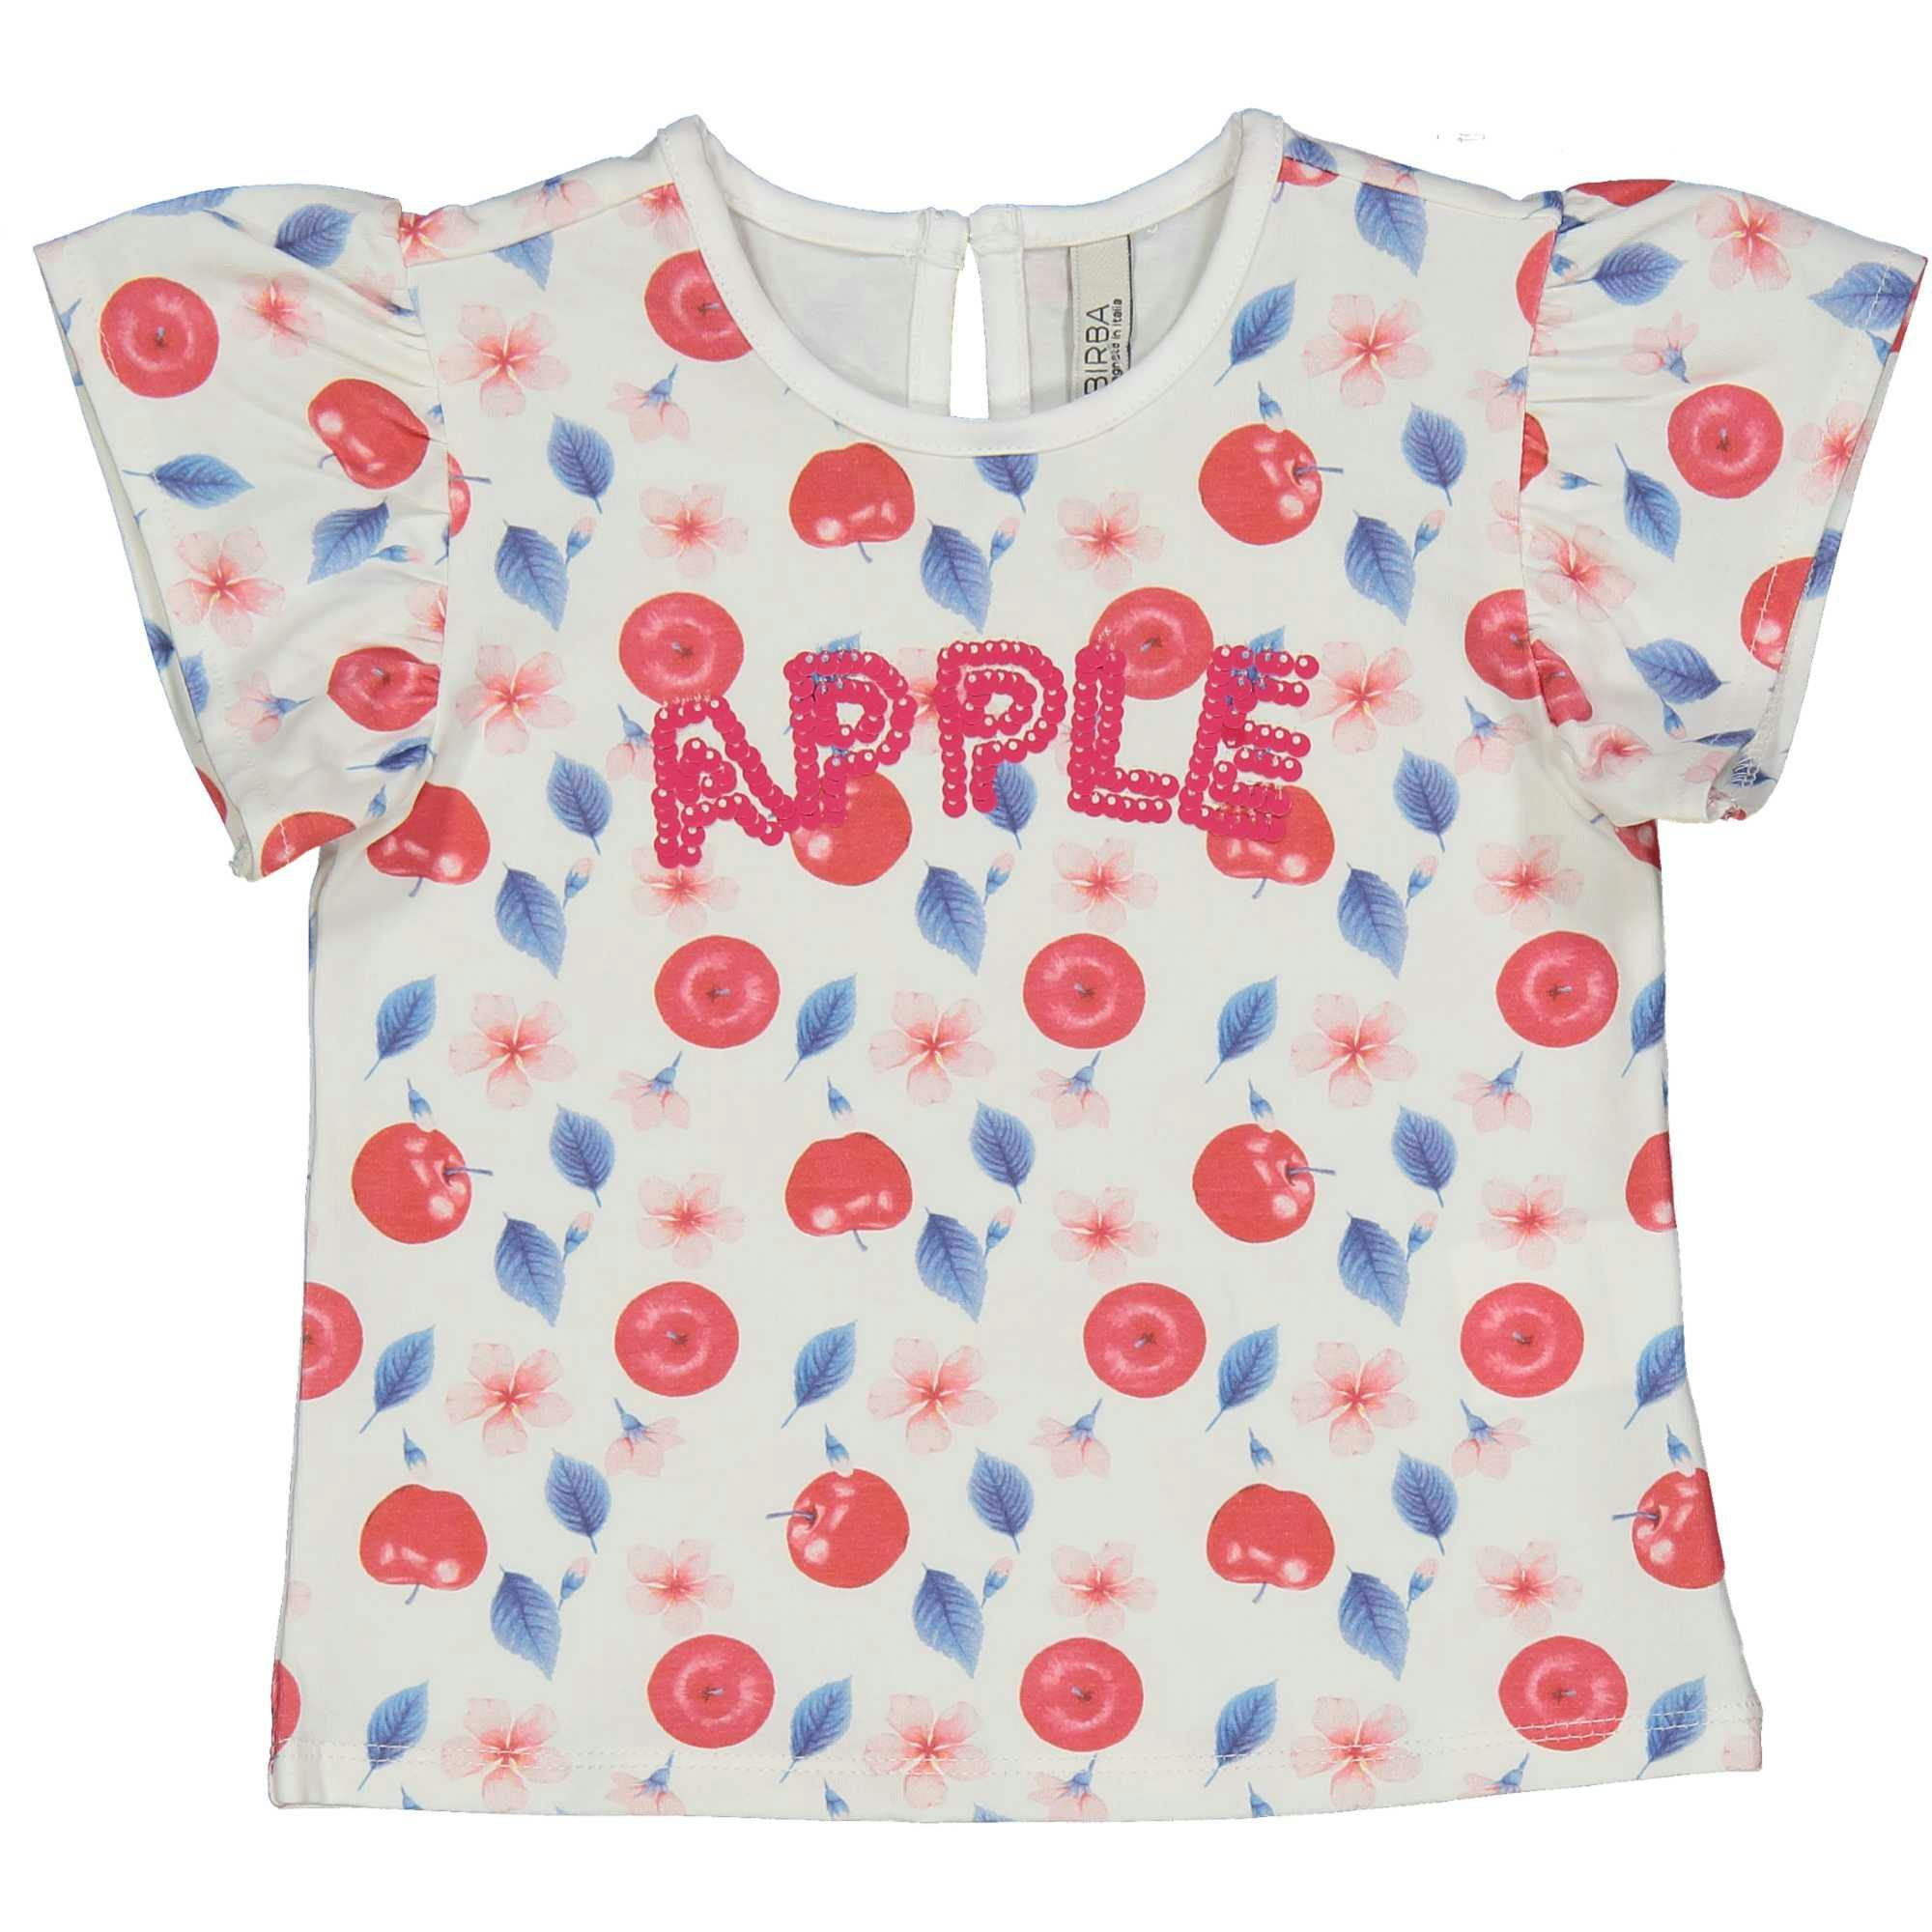  Μπλούζα Apples Printed